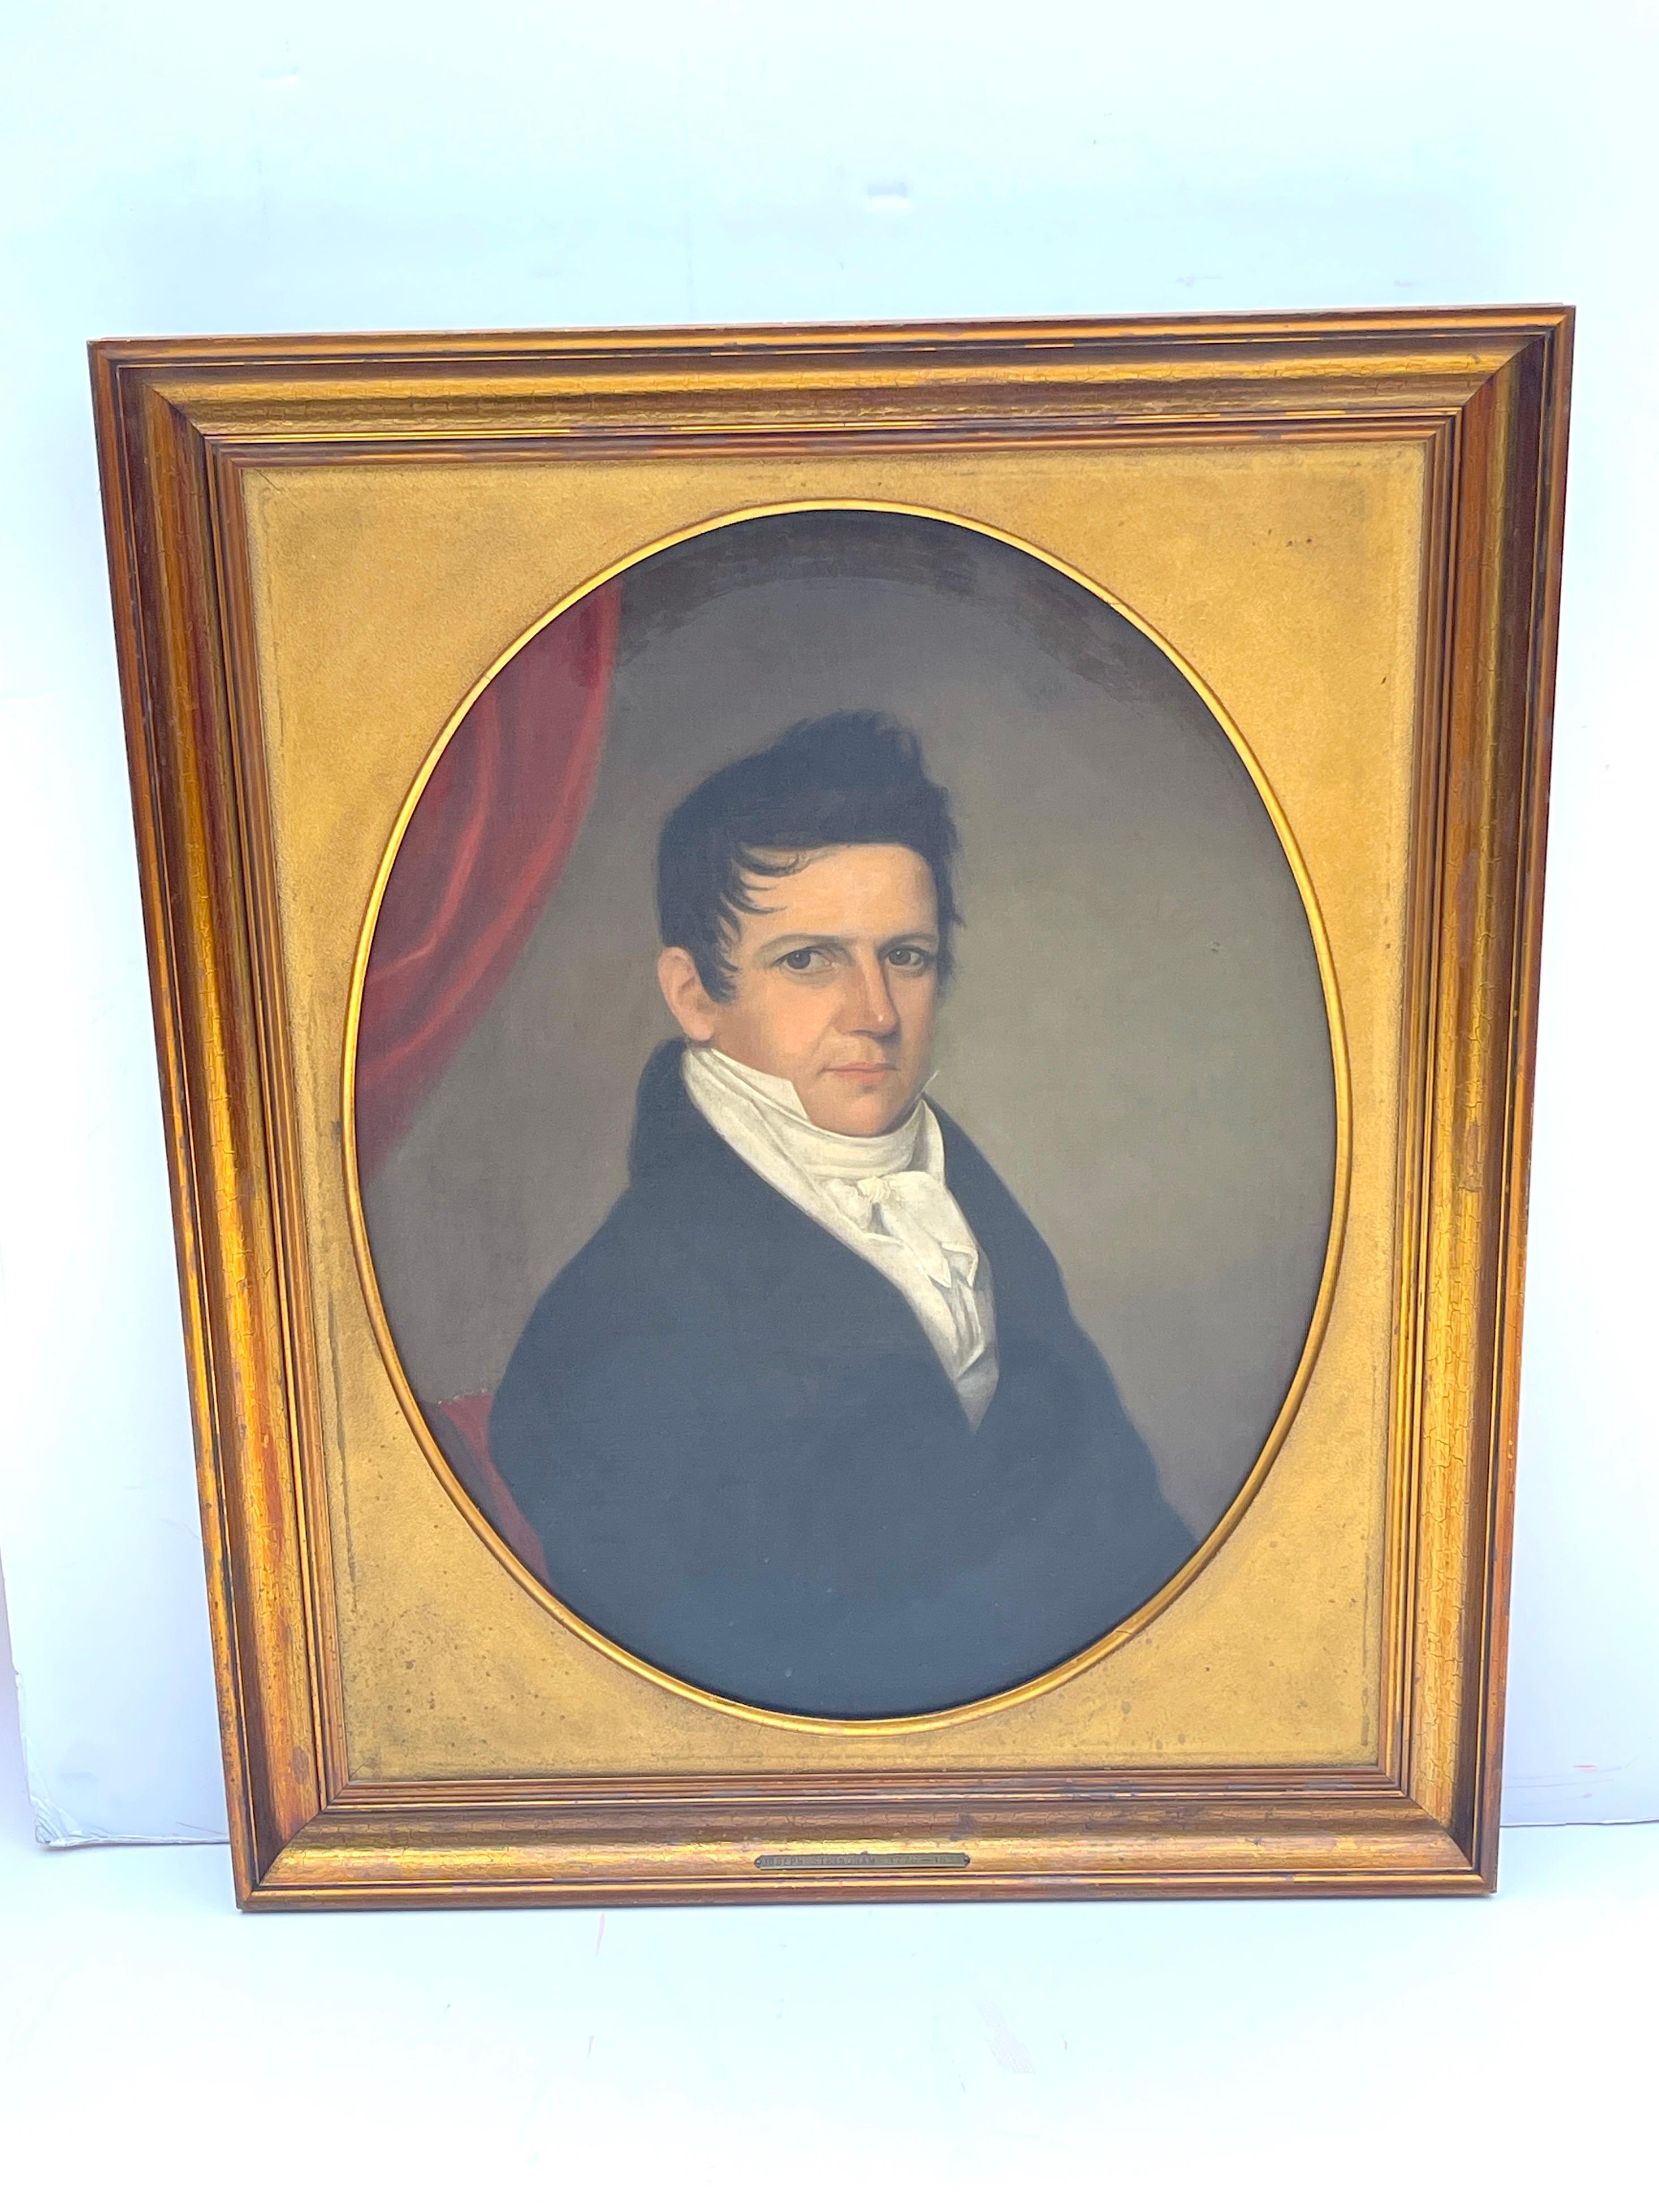 Portrait américain du XIXe siècle de Joseph Stringham (1776-1834)
Huile sur toile
Cadre en bois doré plus tardif

Voici un exquis portrait américain du XIXe siècle de Joseph Stringham (1776-1834), réalisé à l'huile sur toile et élégamment encadré